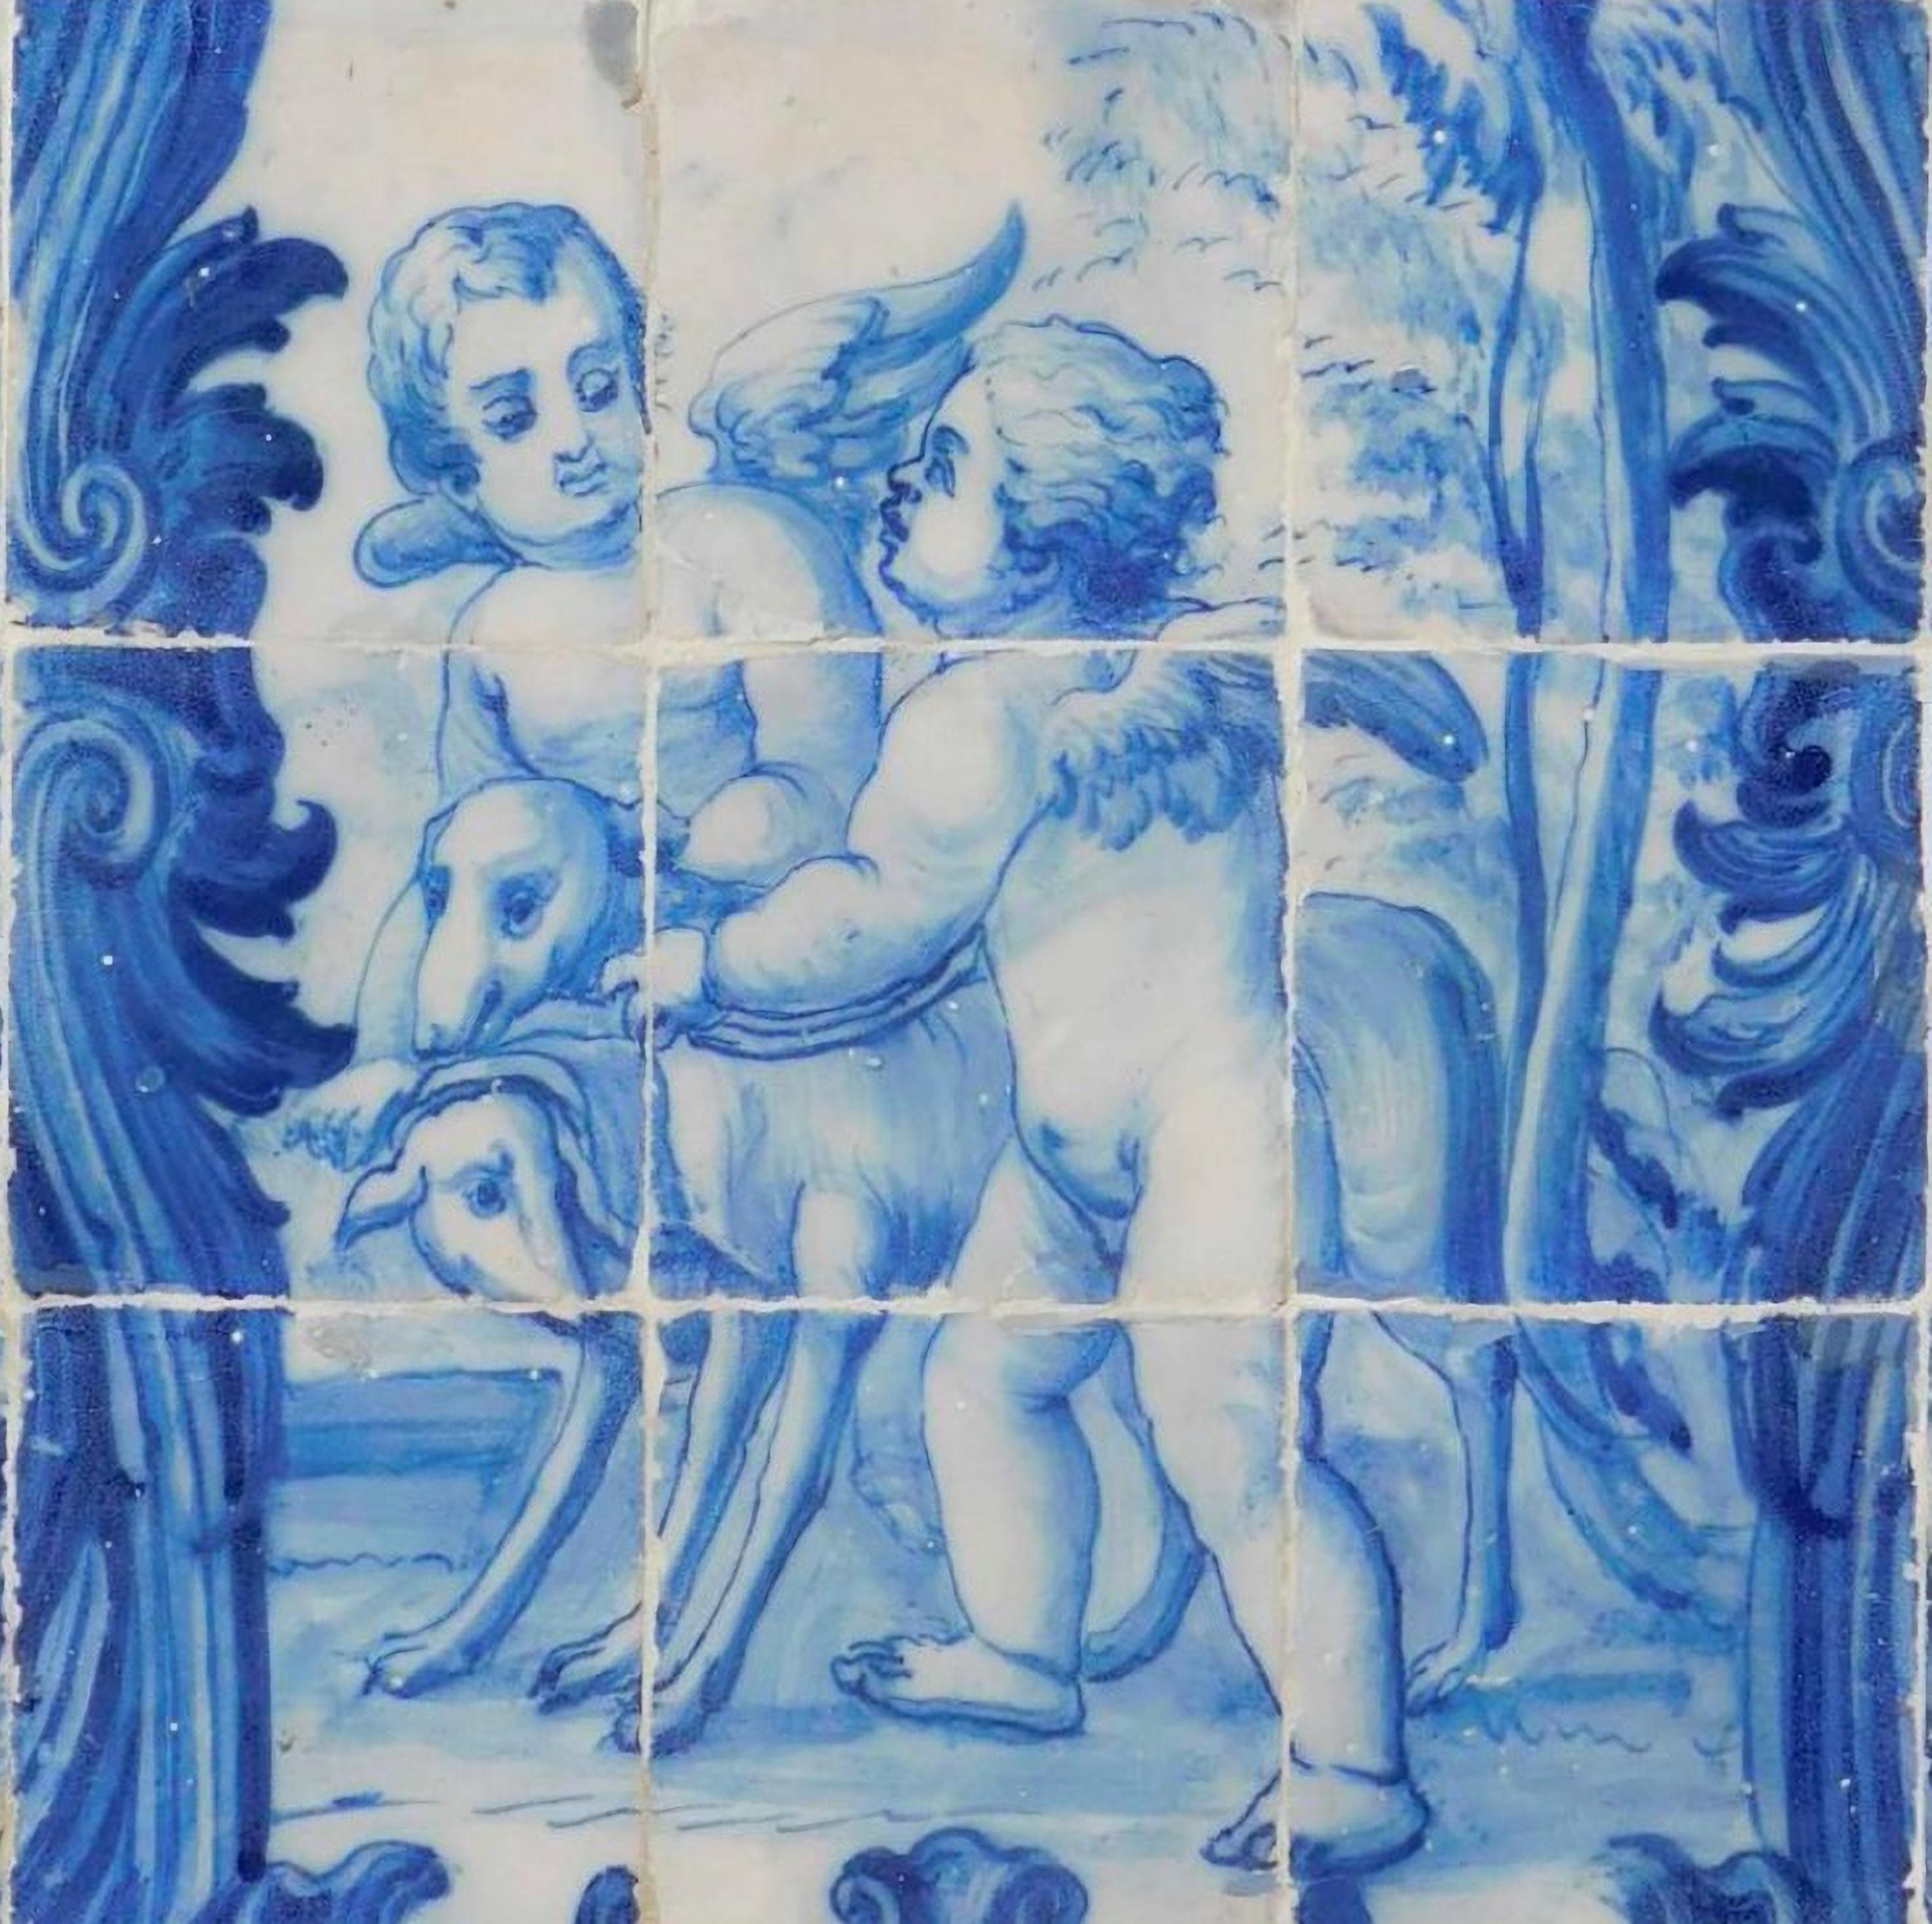 « Anges » portugais du 18ème siècle 
Dimensions : 84 cm x 70 cm
30 Tuiles.

Importante note : ce panneau est accompagné des carreaux restaurés du 18ème siècle.
Le panneau est livré comme s'il s'agissait d'un tableau avec un squelette en bois,